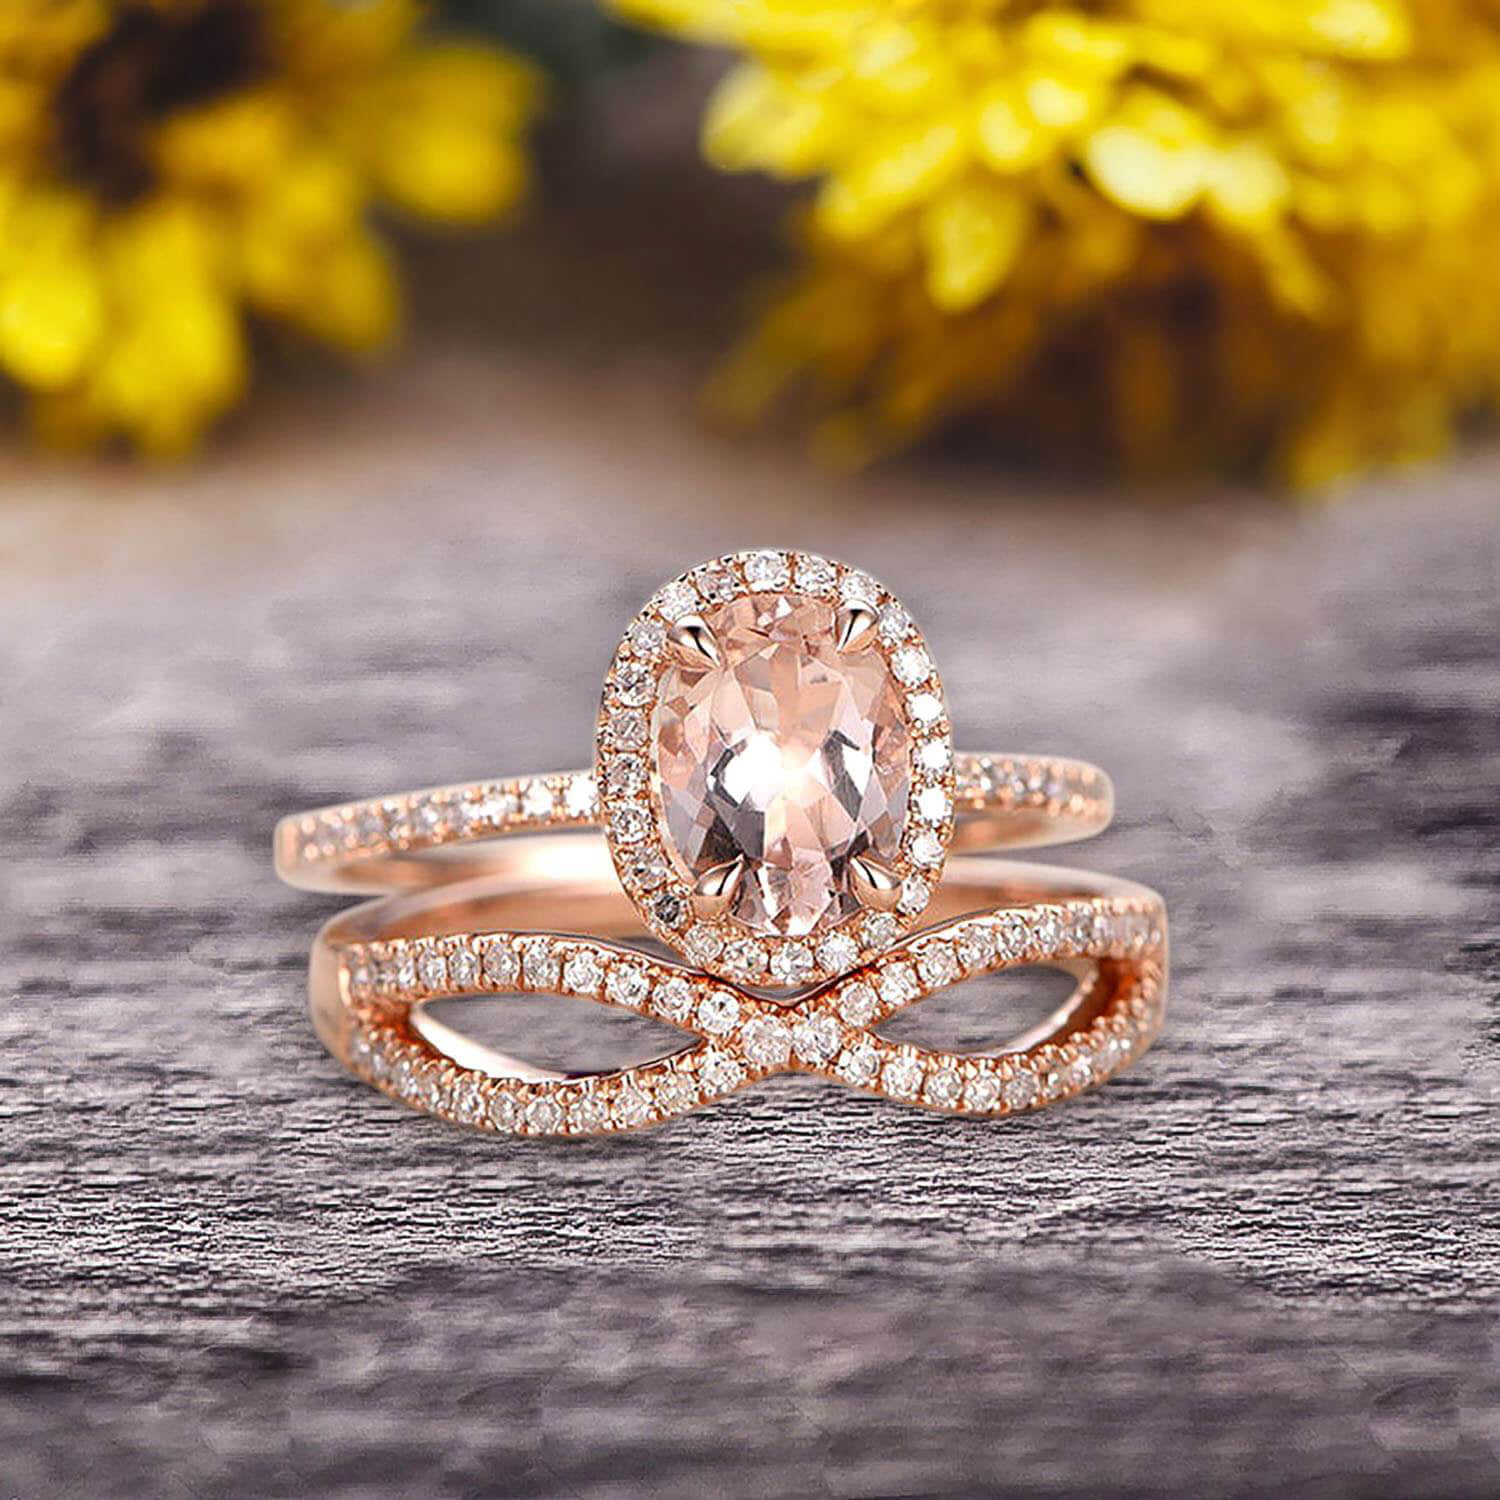 Ladies Custom Ogham Wedding Ring — Unique Celtic Wedding Rings